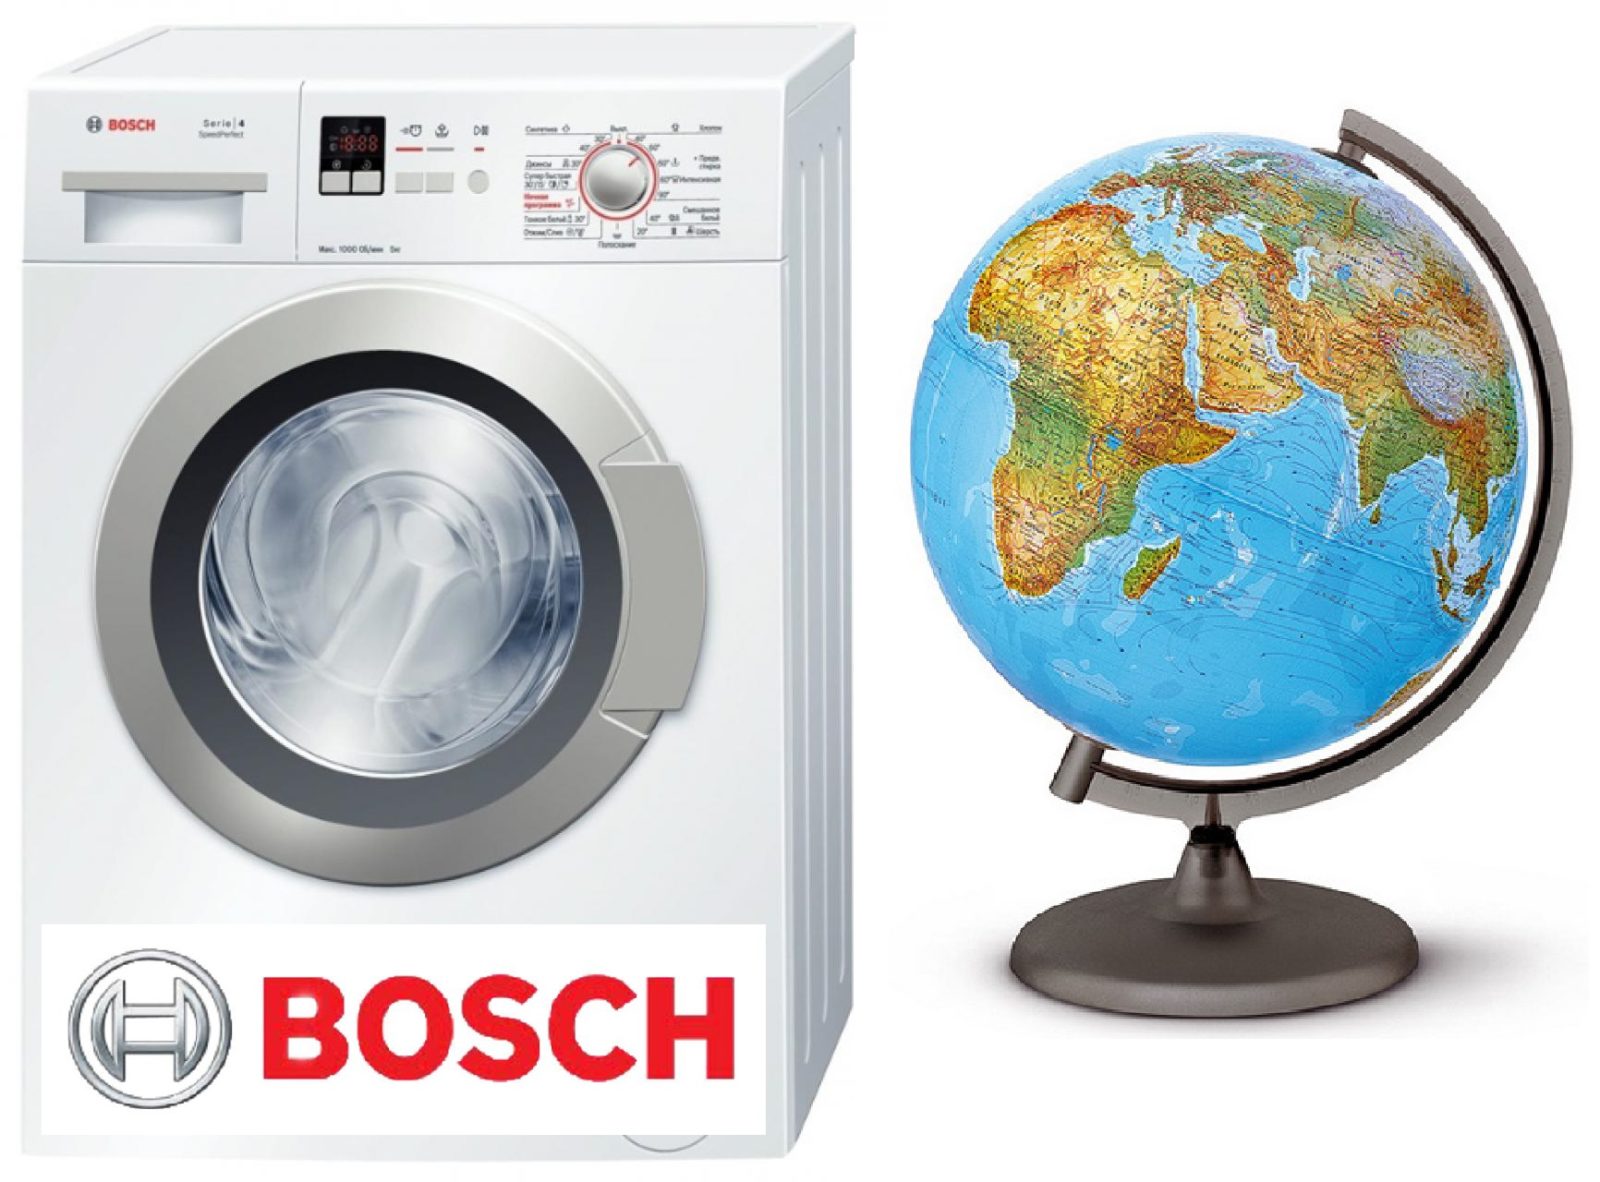 Hol kell összeállítani a Bosch mosógépeket